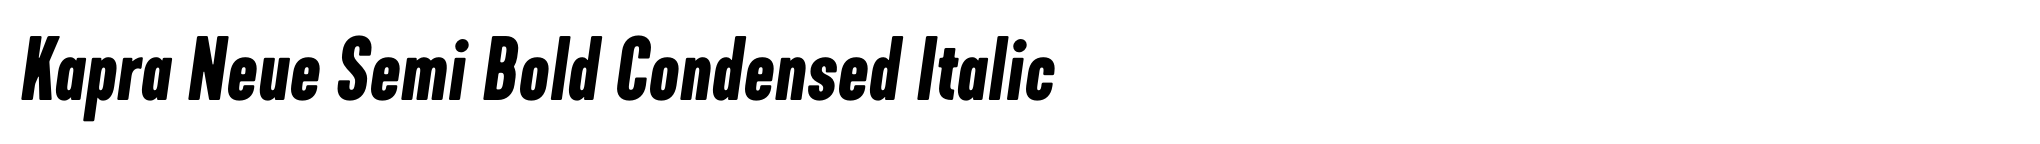 Kapra Neue Semi Bold Condensed Italic image